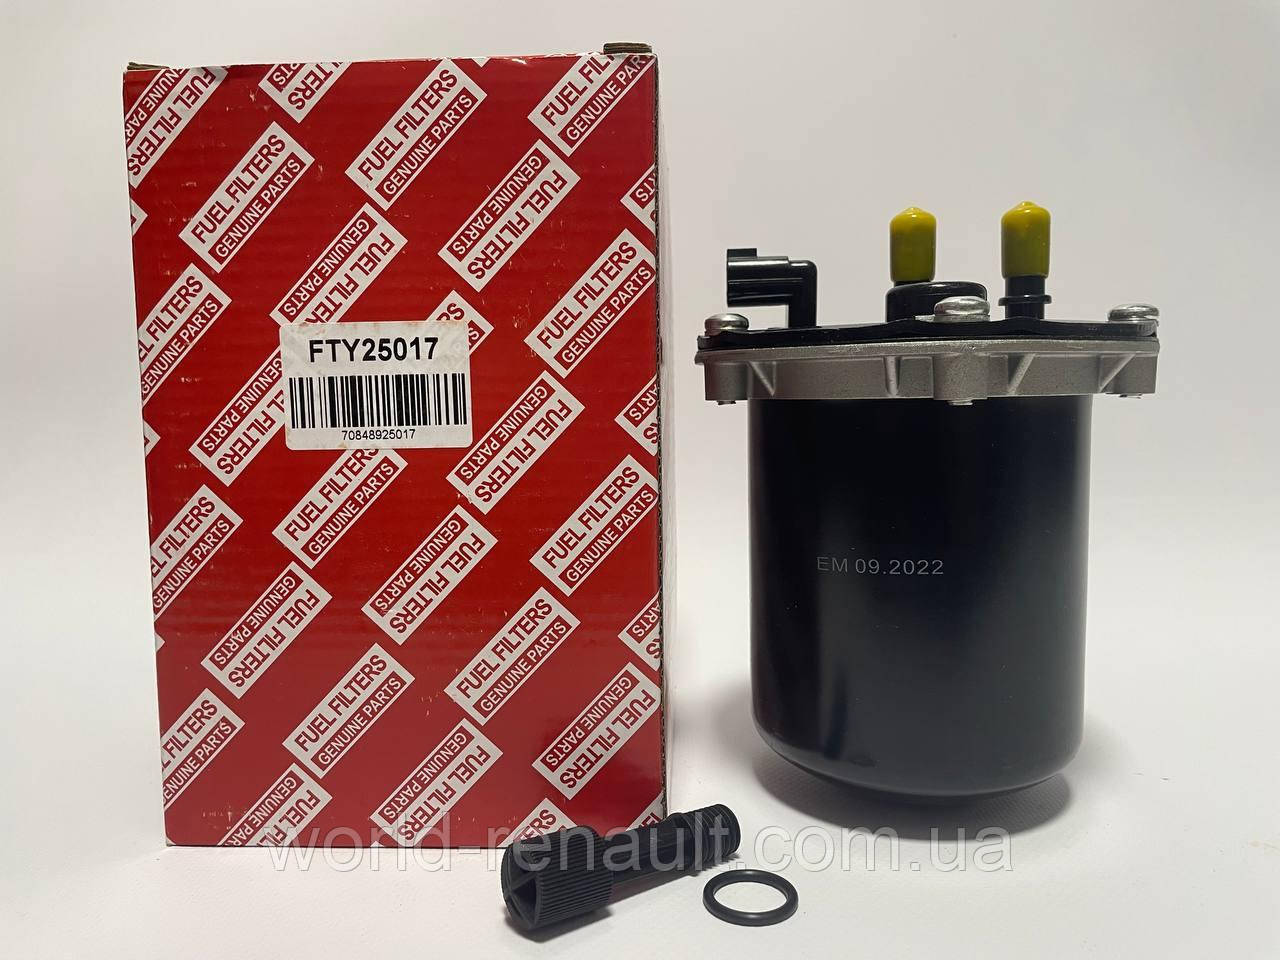 RENZET (Польща) FTY25017 — Паливний фільтр (розбірний) на Renault Duster II 2018г.